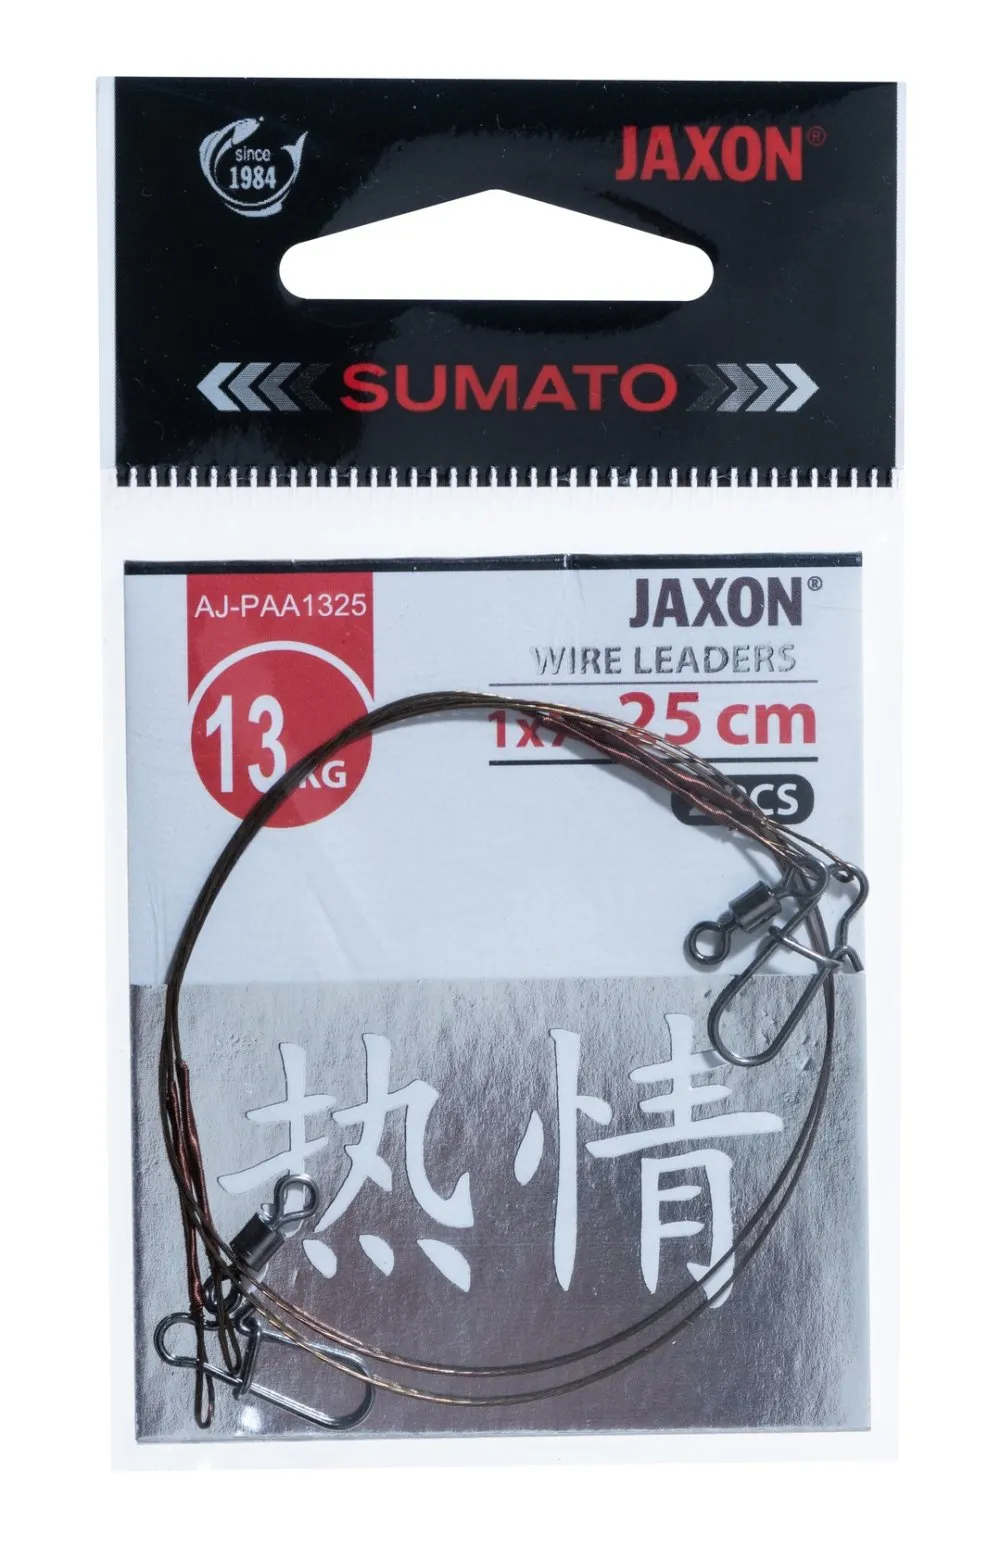 JAXON SUMATO WIRE LEADERS 9kg 30cm